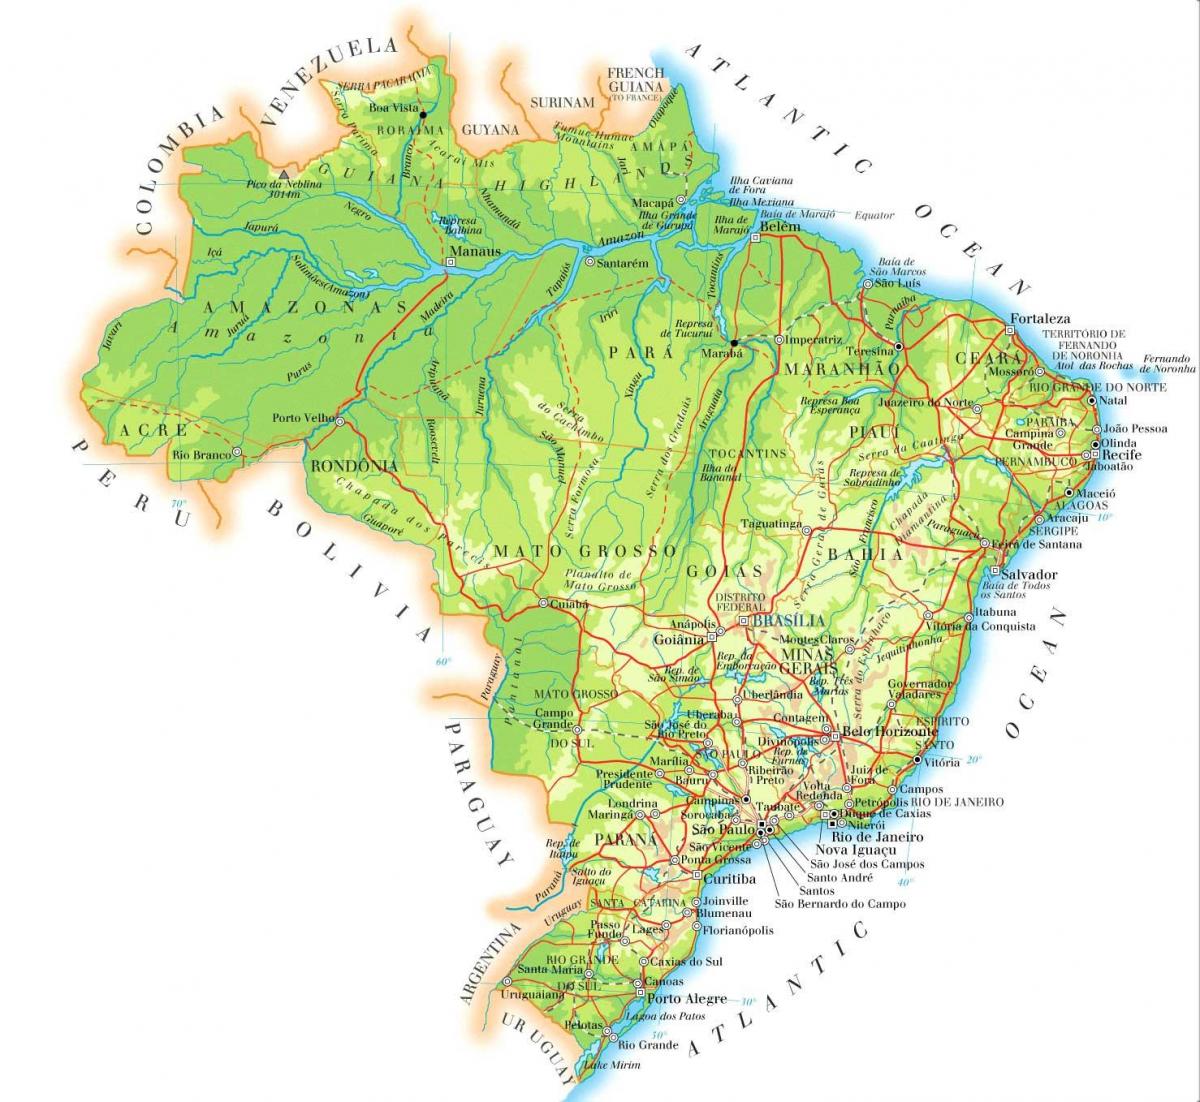 Mappa altimetrica del Brasile